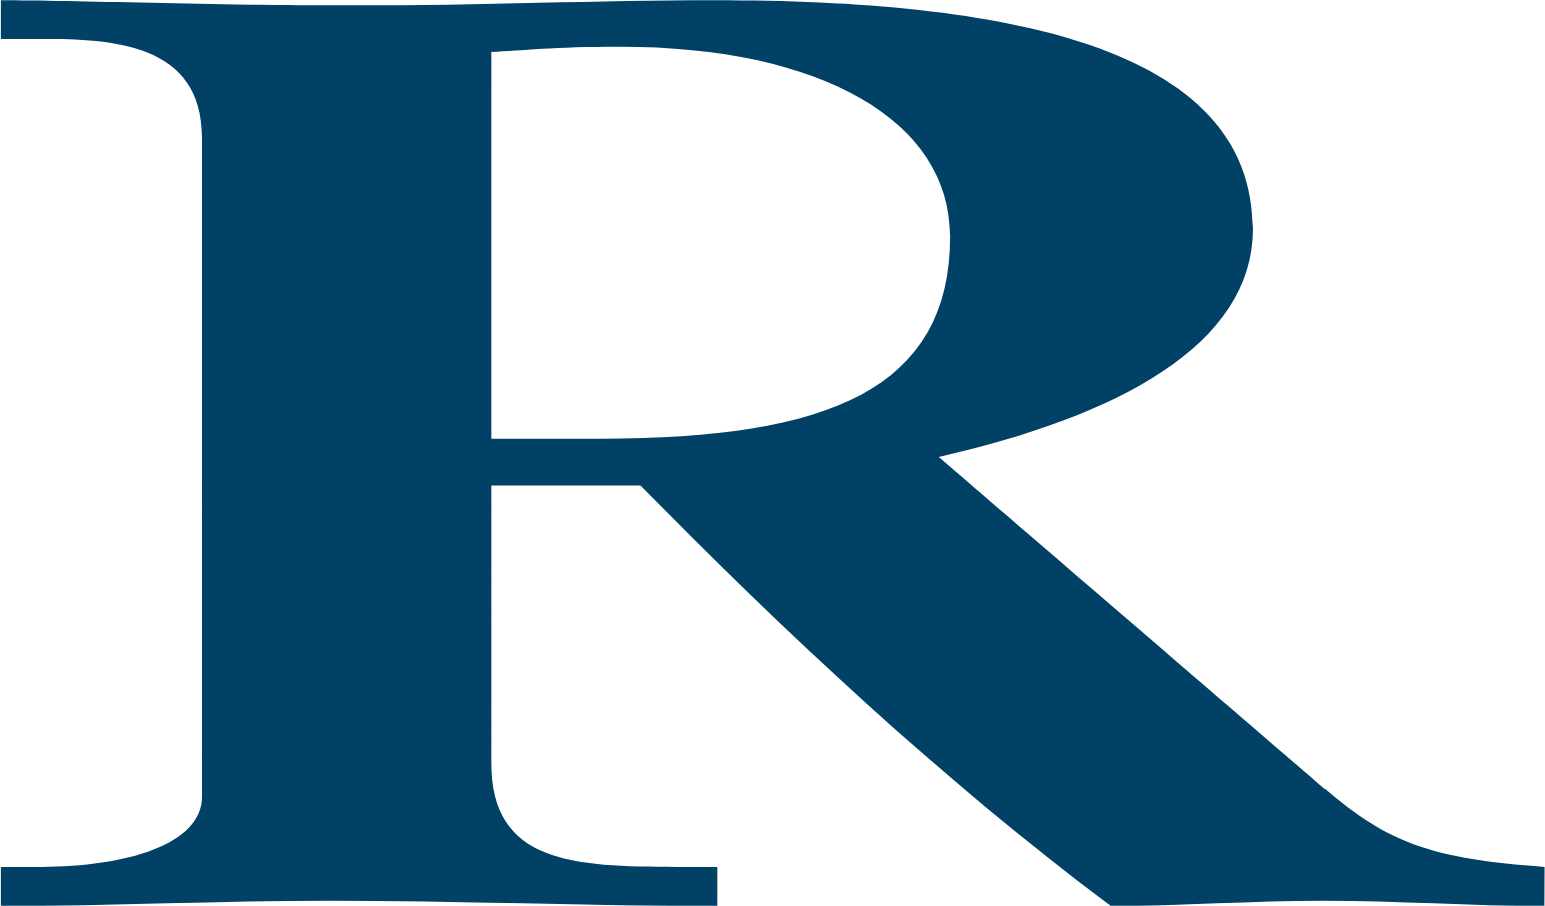 Compagnie Financière Richemont logo (PNG transparent)